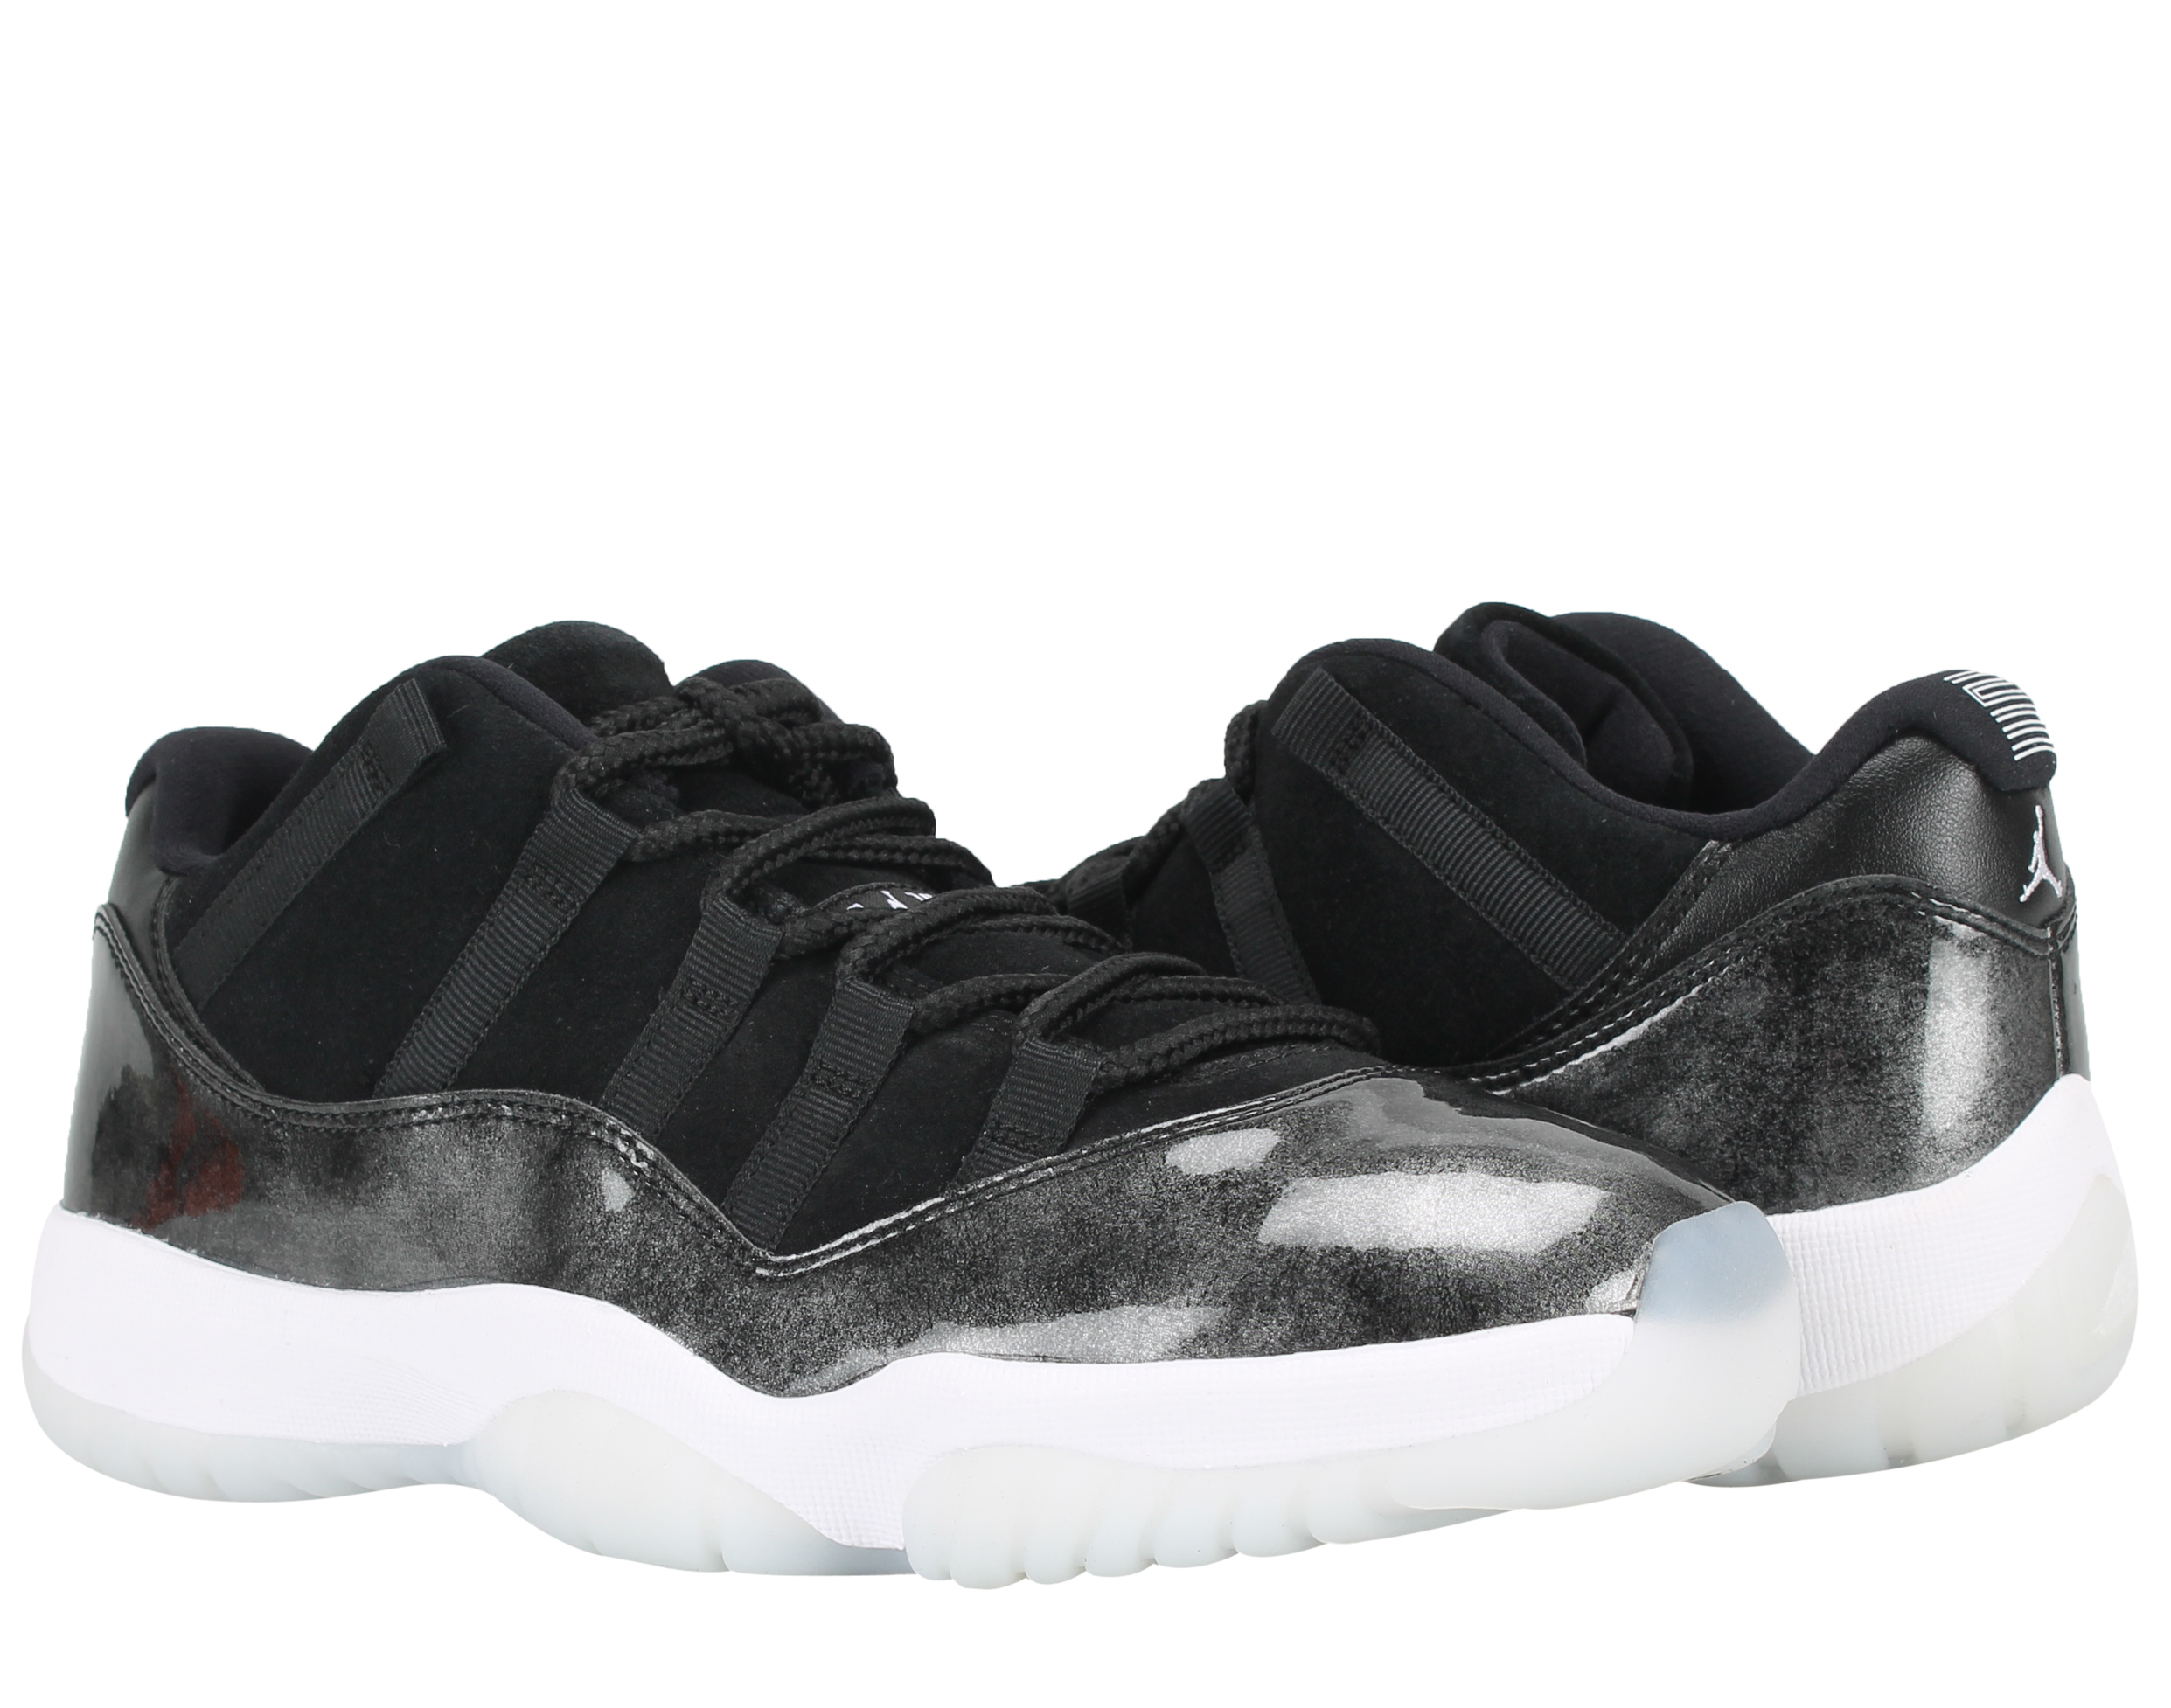 Nike Mens Air Jordan 11 Retro Low "Barons" Black/White-Silver 528895-010 - image 1 of 6